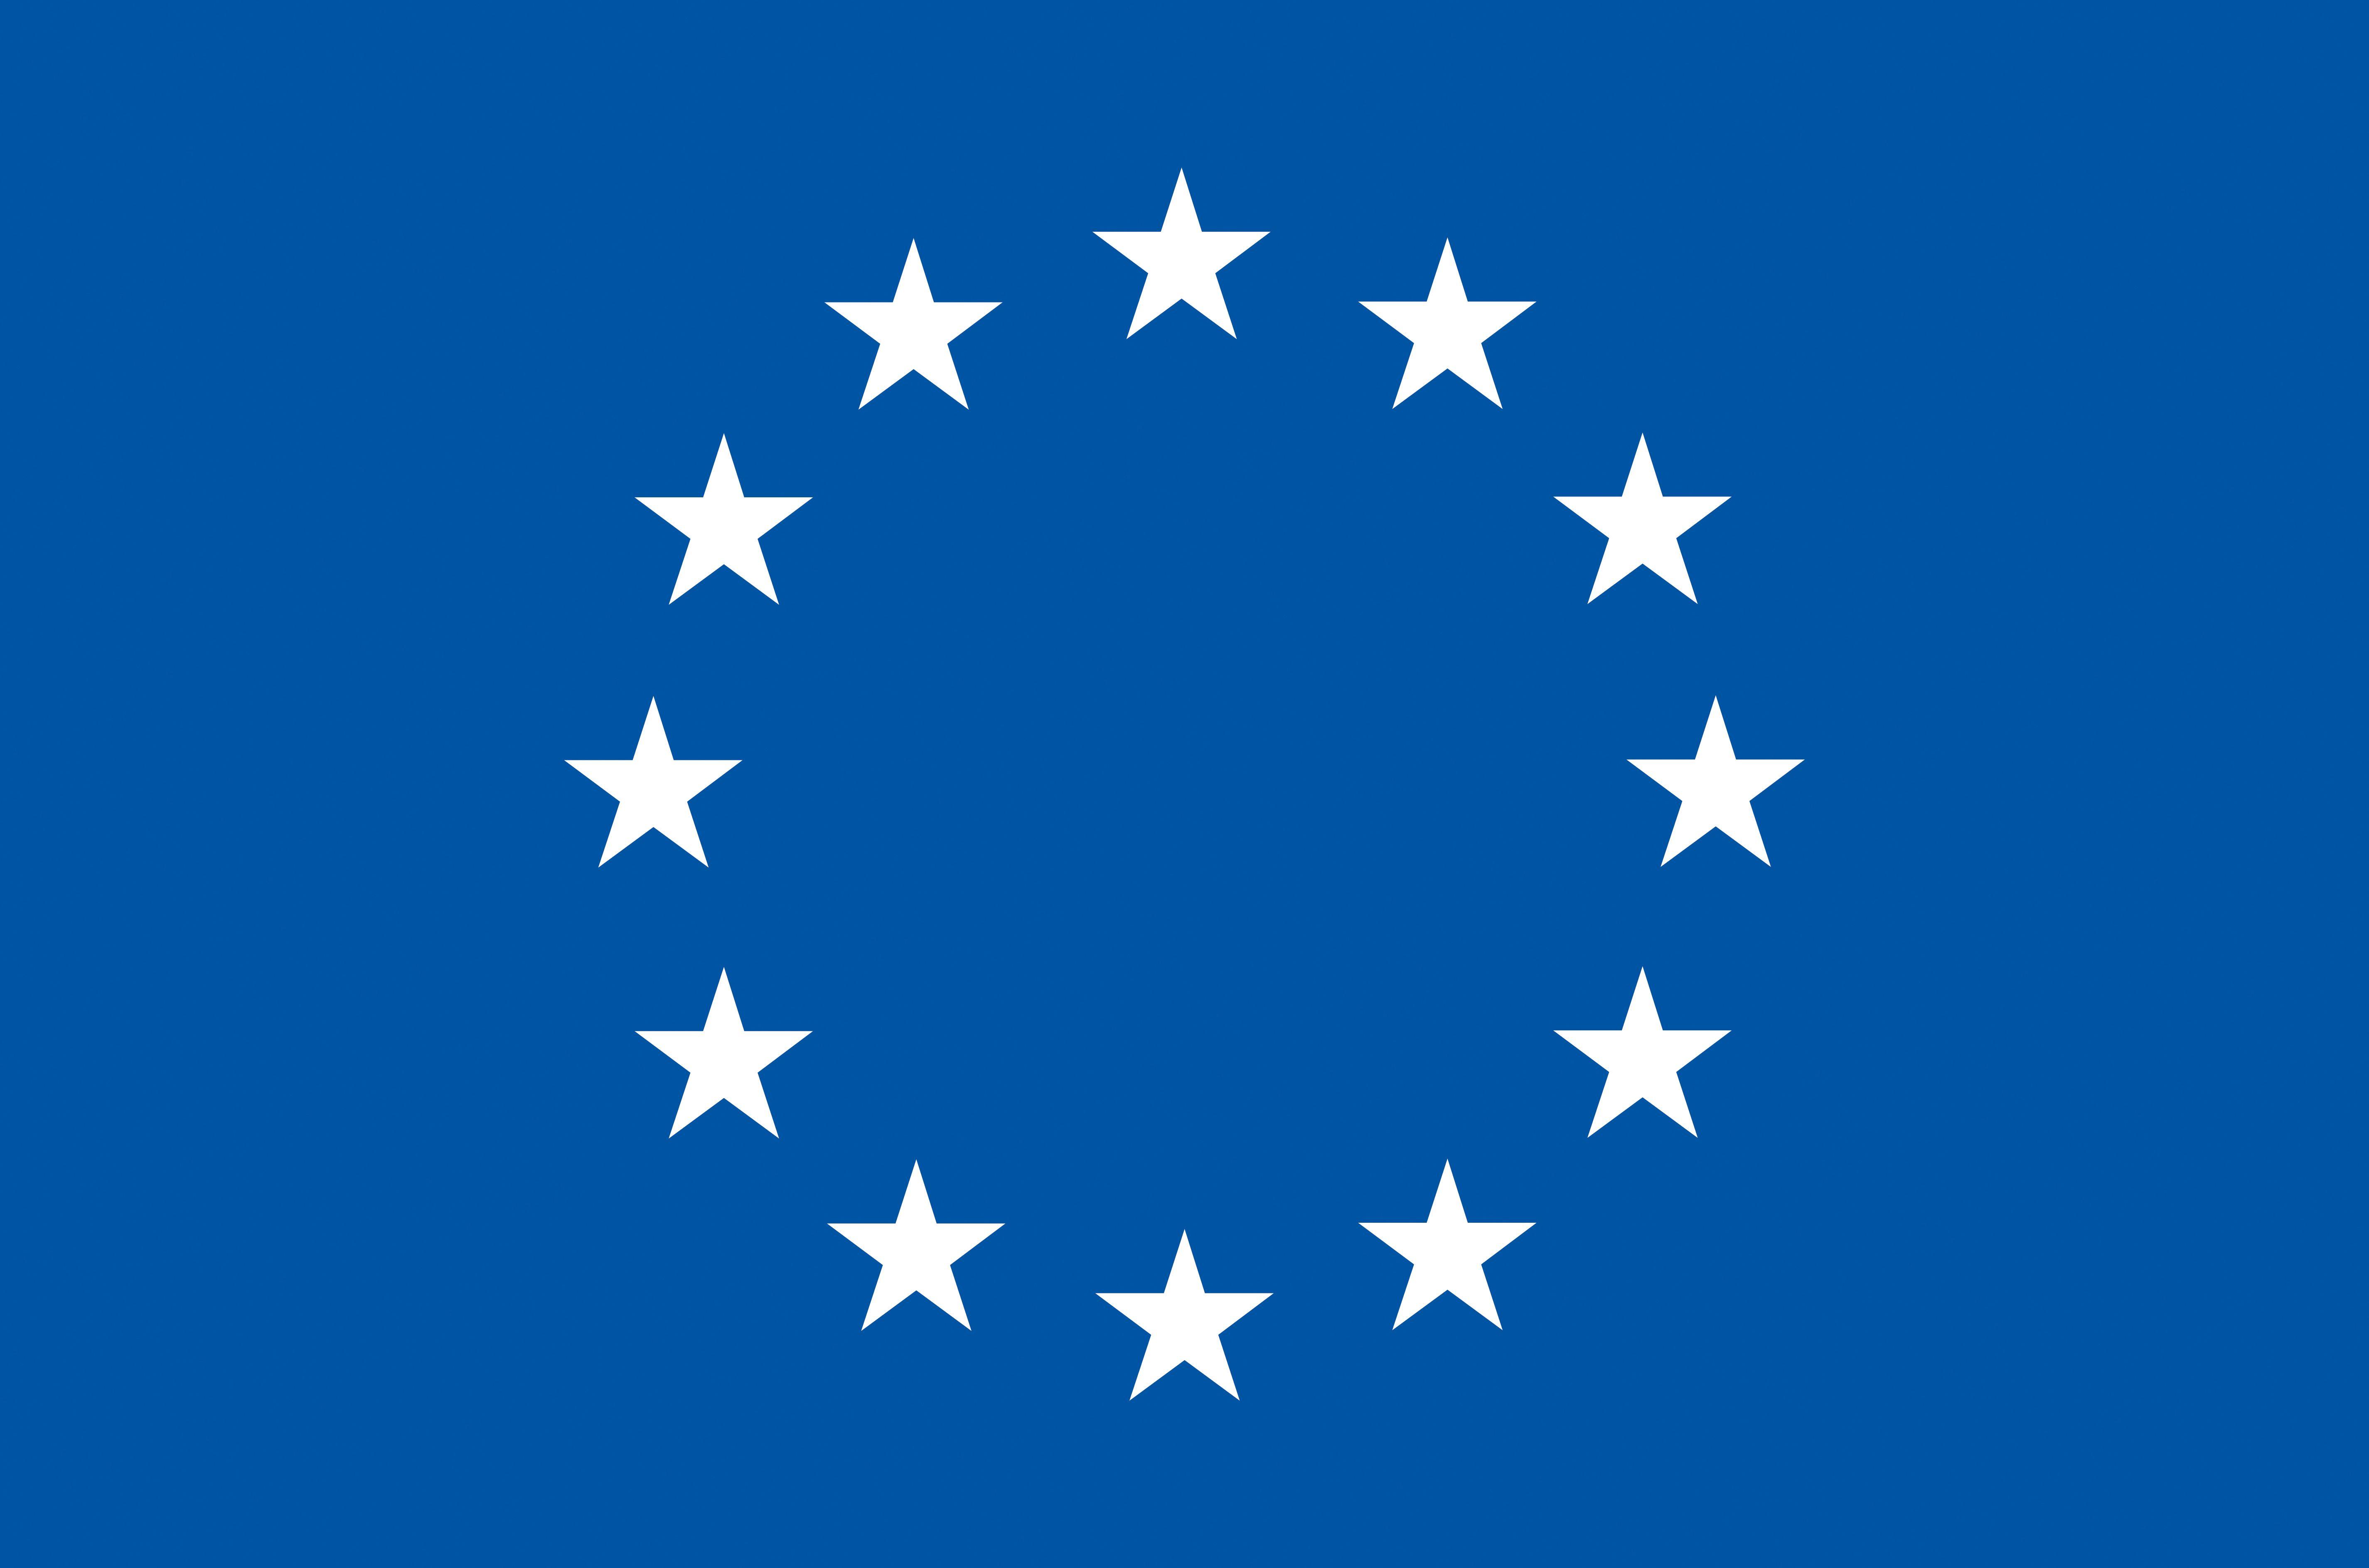 Europe Logo - The European flag | European Union